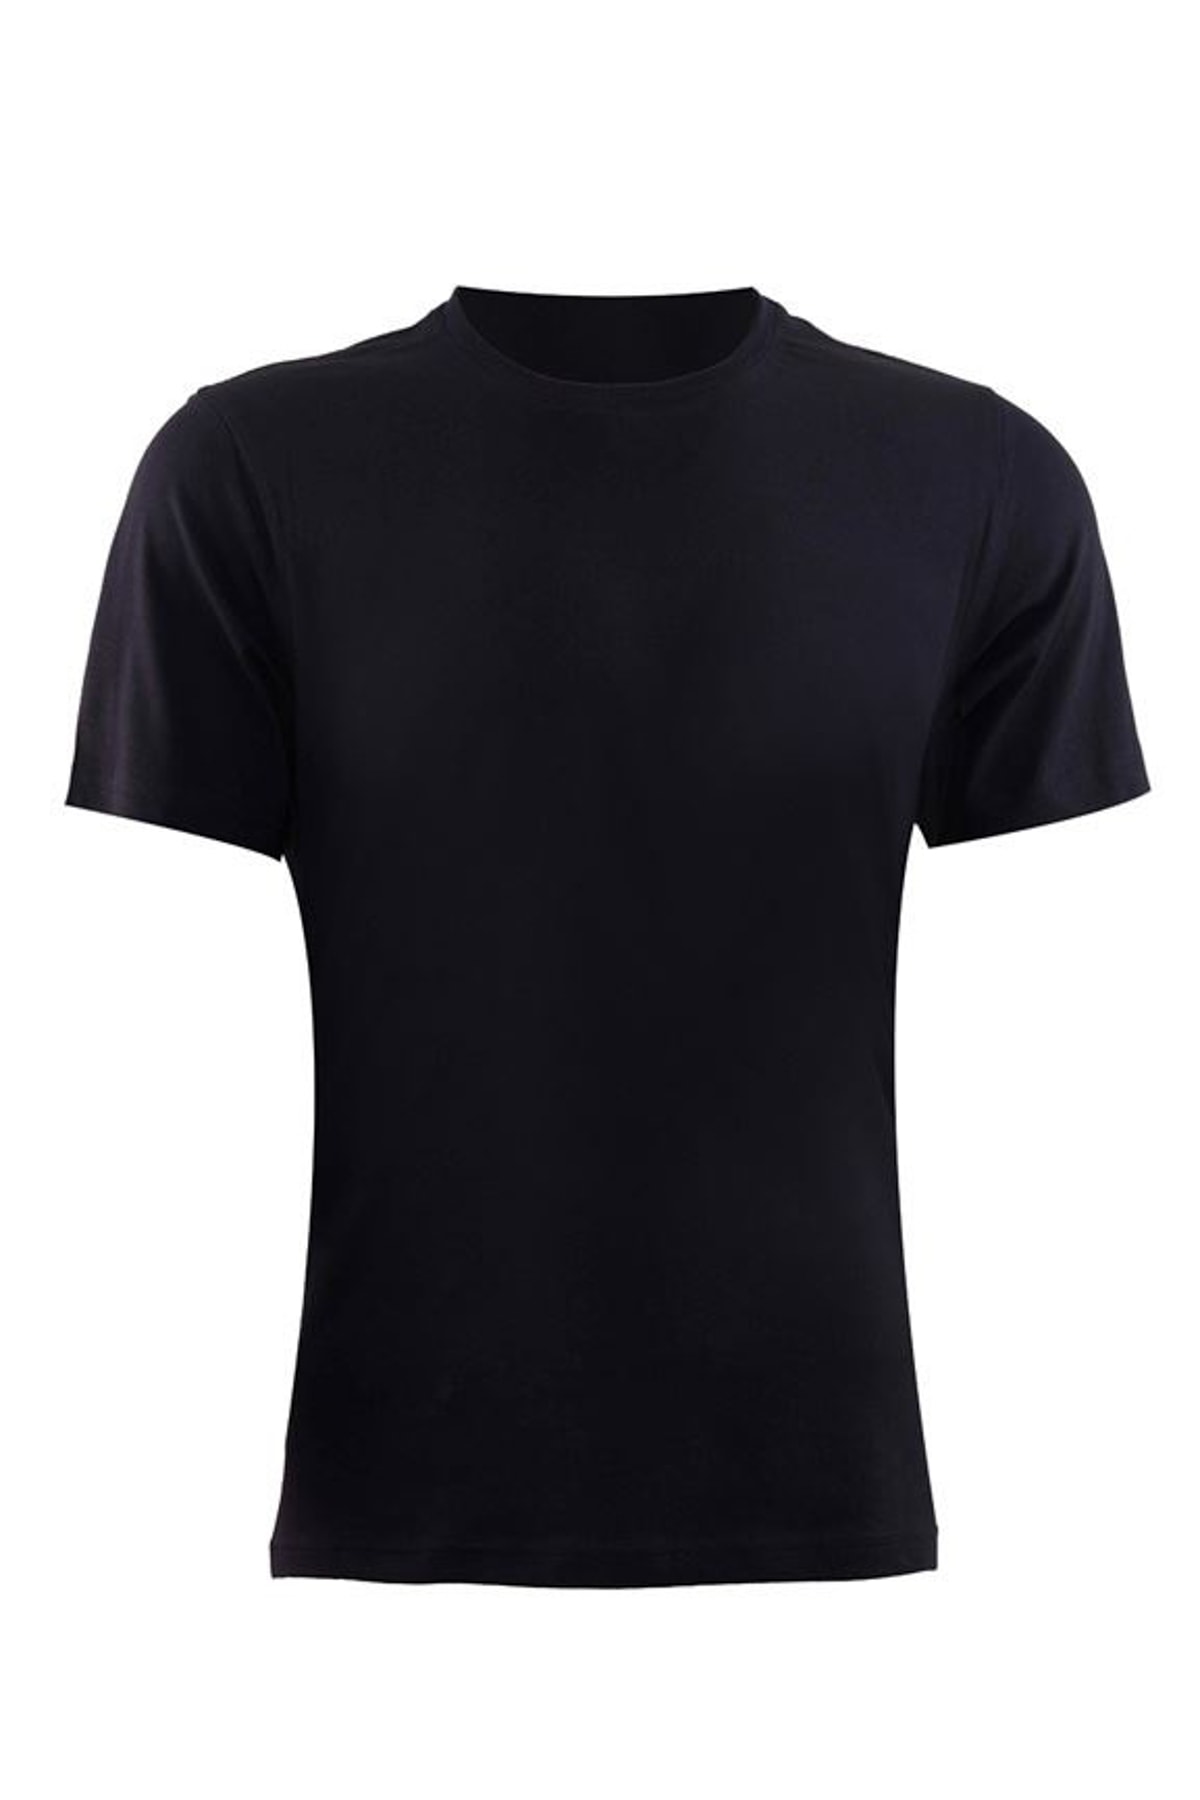 Blackspade 9218-Erkek Siyah T-Shirt-M